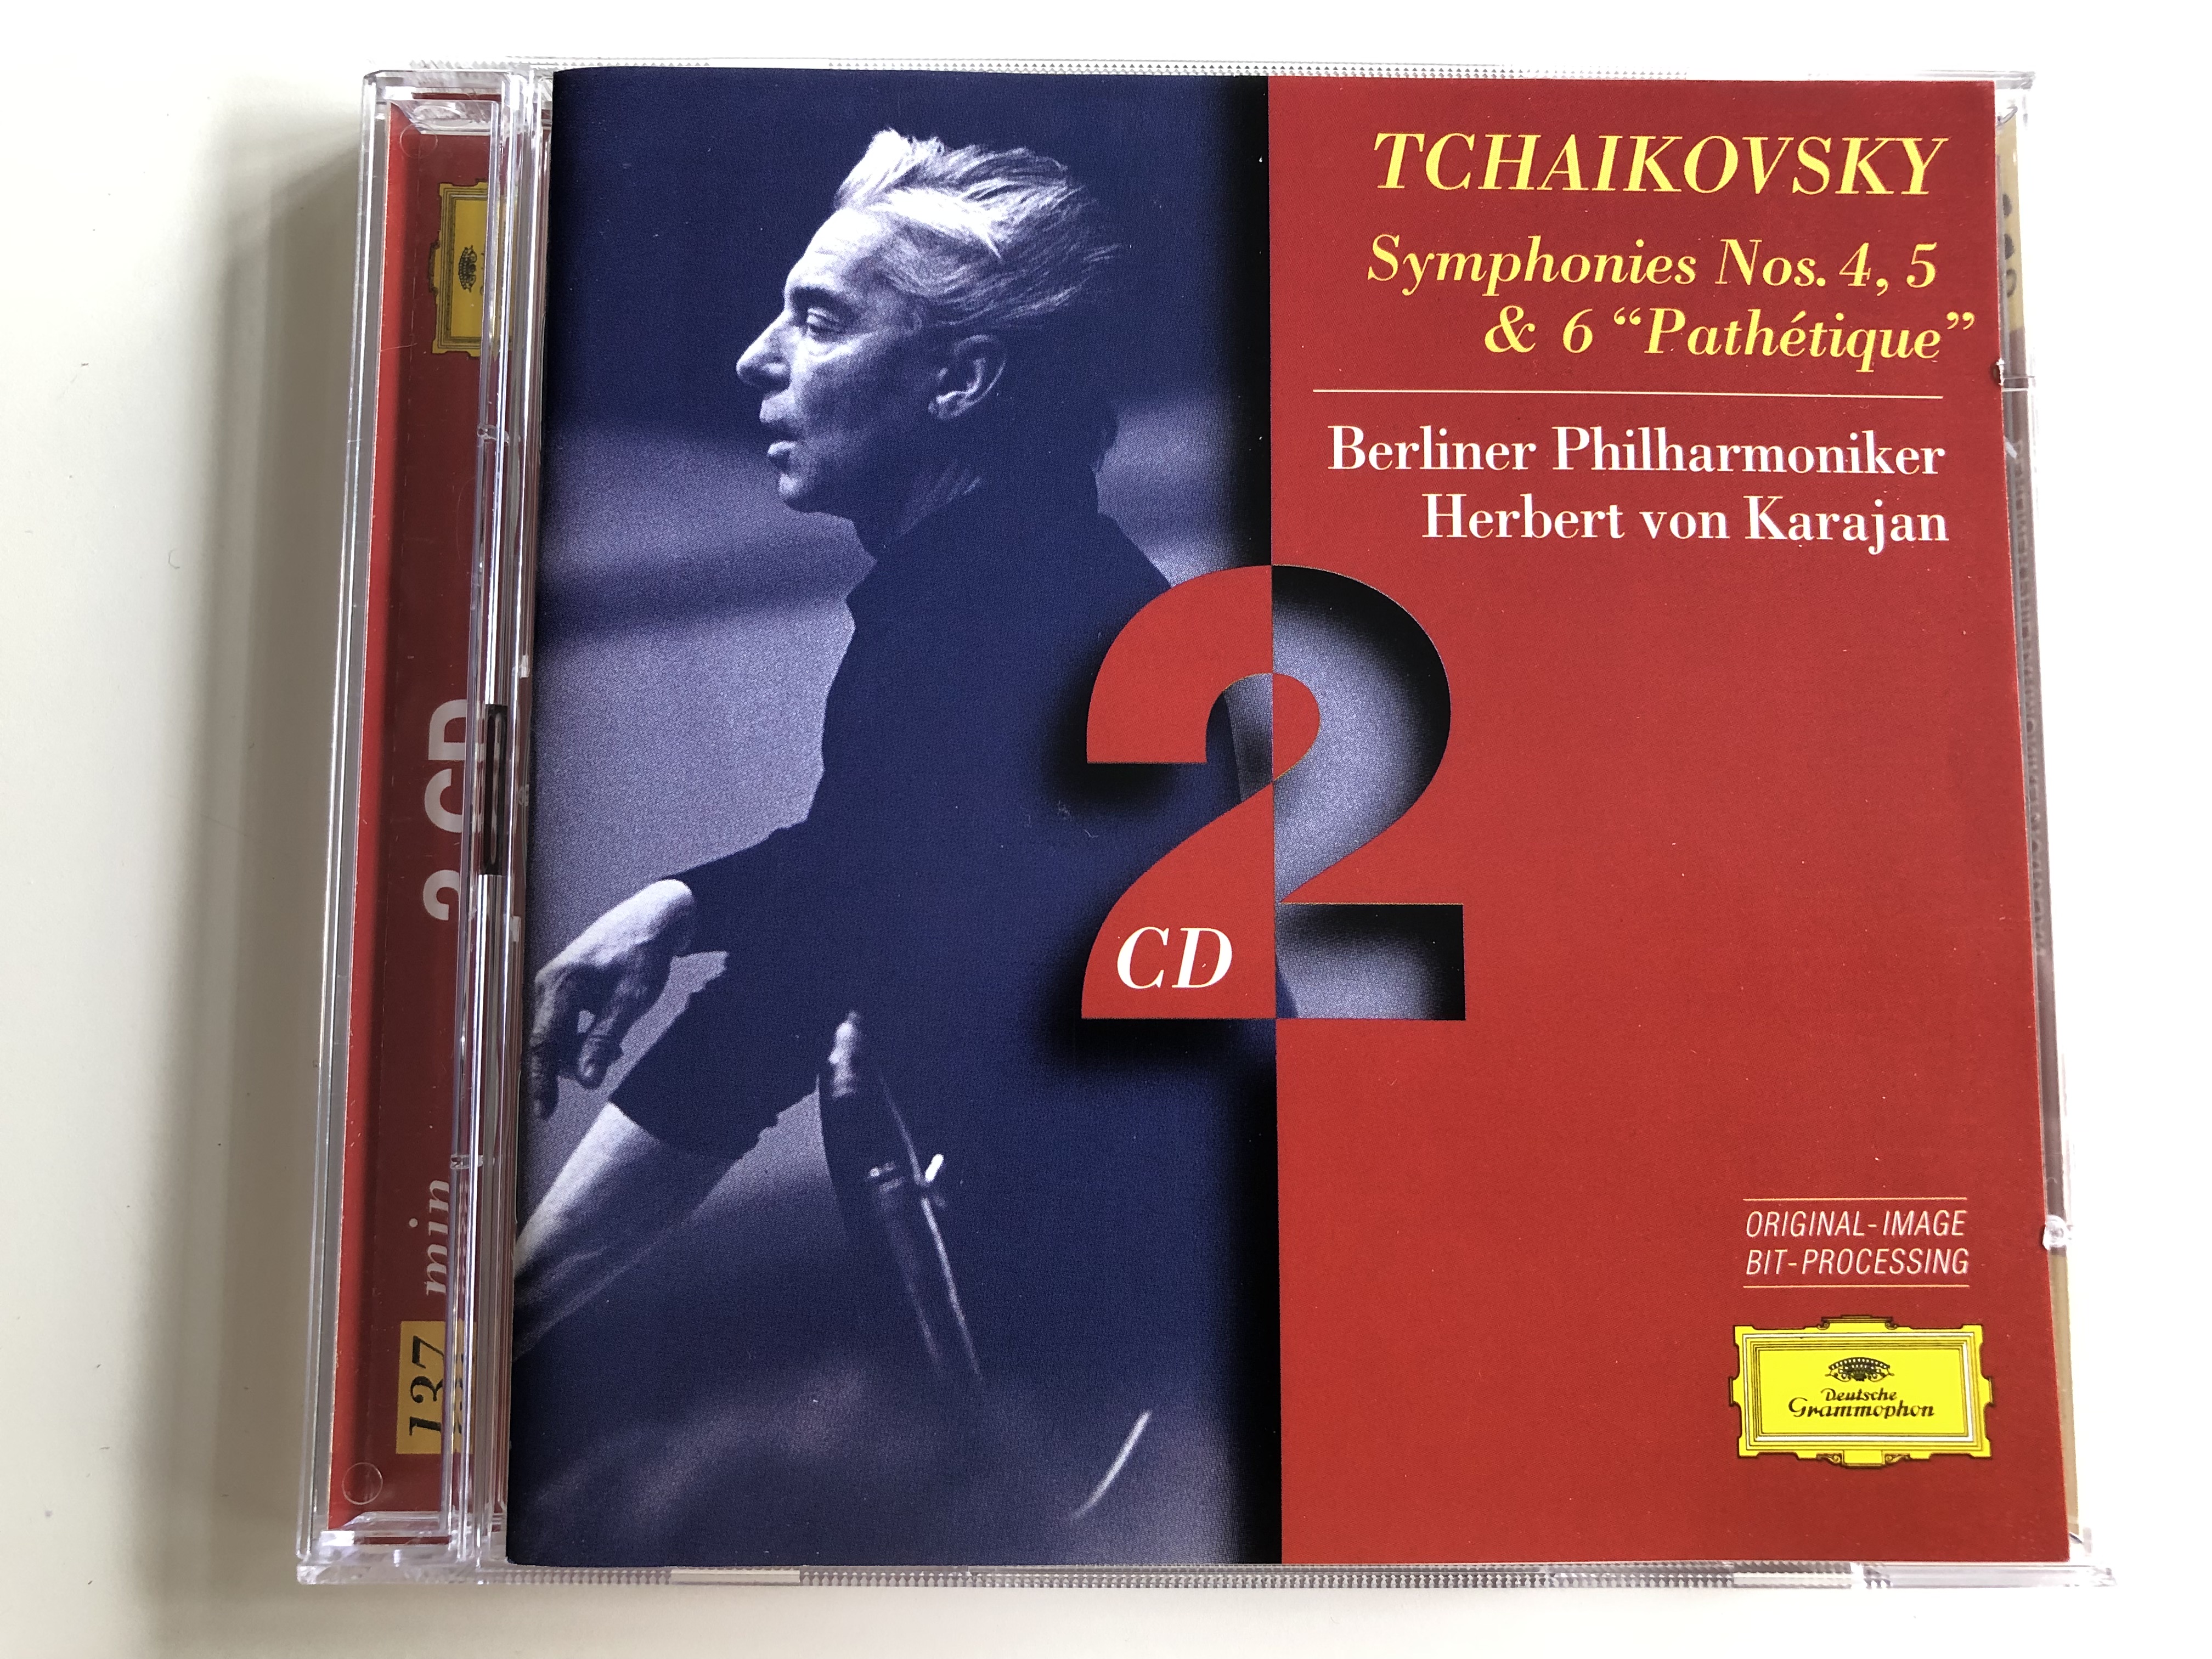 tchaikovsky-symphonies-4-5-6-path-tique-berliner-philharmoniker-conducted-by-herber-von-karajan-2-cd-audio-set-py925-1-.jpg